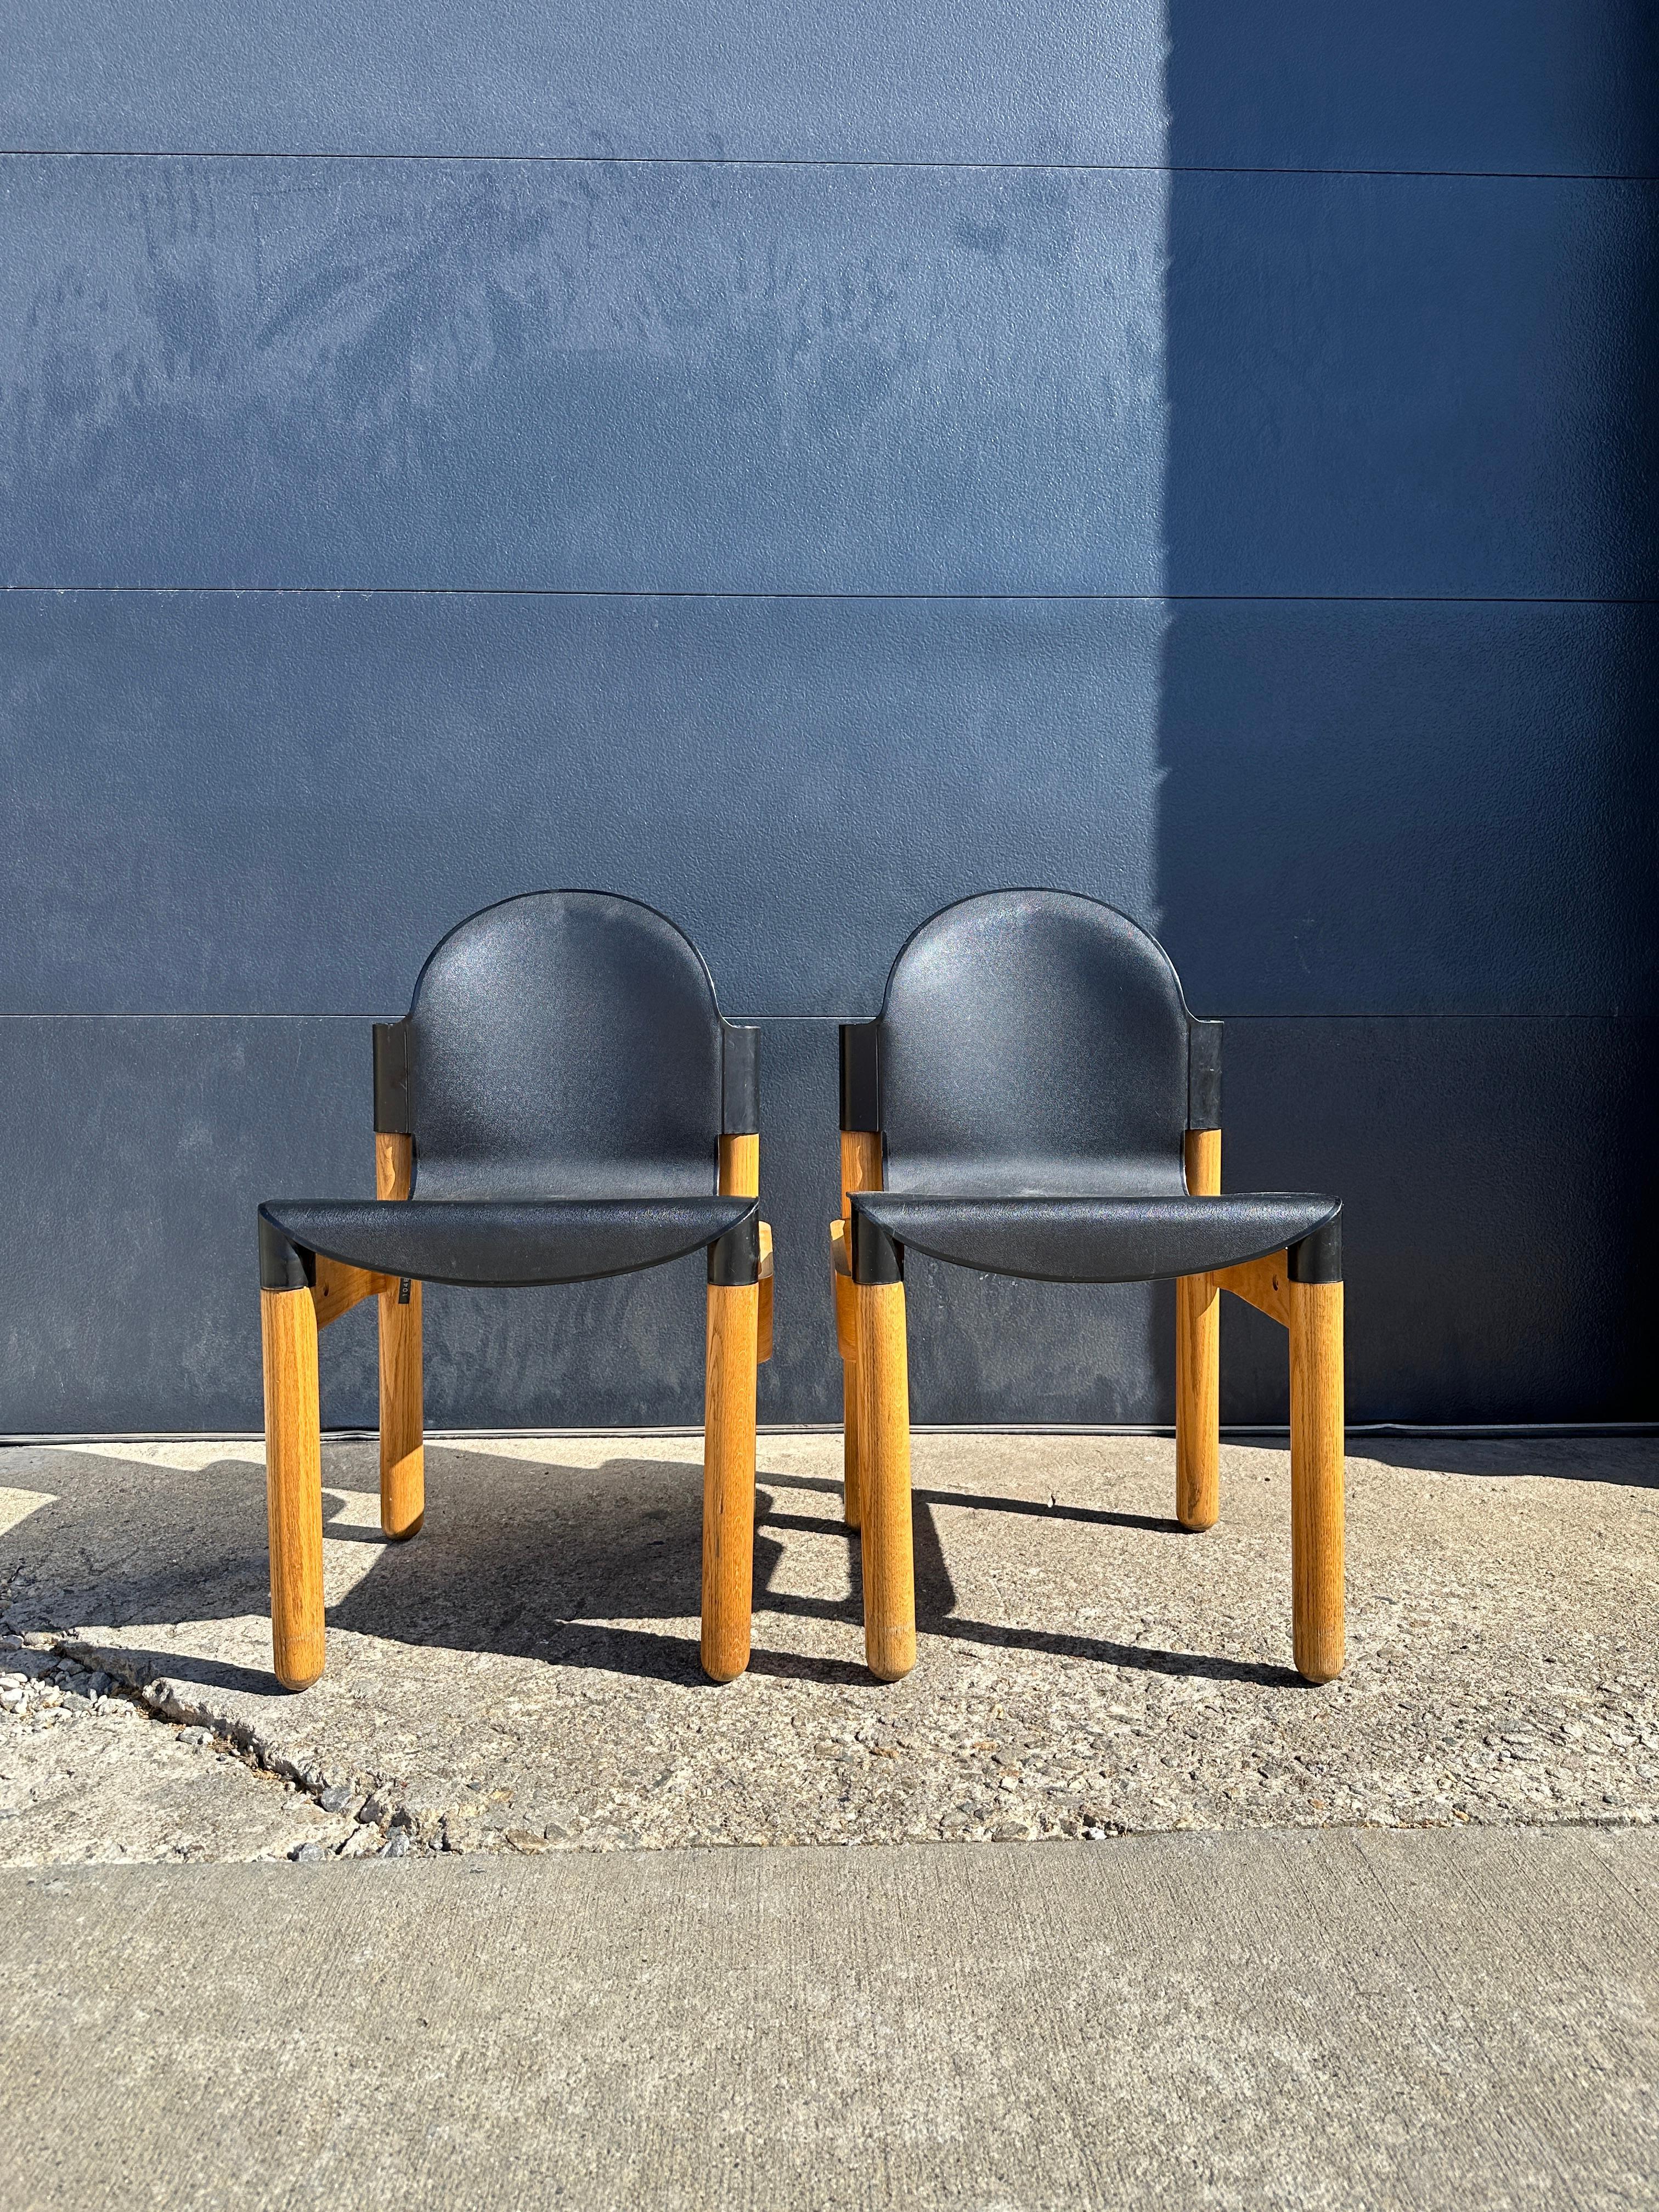 Ein Paar Mid Century Chair Flex, entworfen von Gerd Lange für Thonet in Deutschland, ca. 1970er Jahre.

Markiert. Stapelbar. Praktisch

Verkauft als Set

18,3 